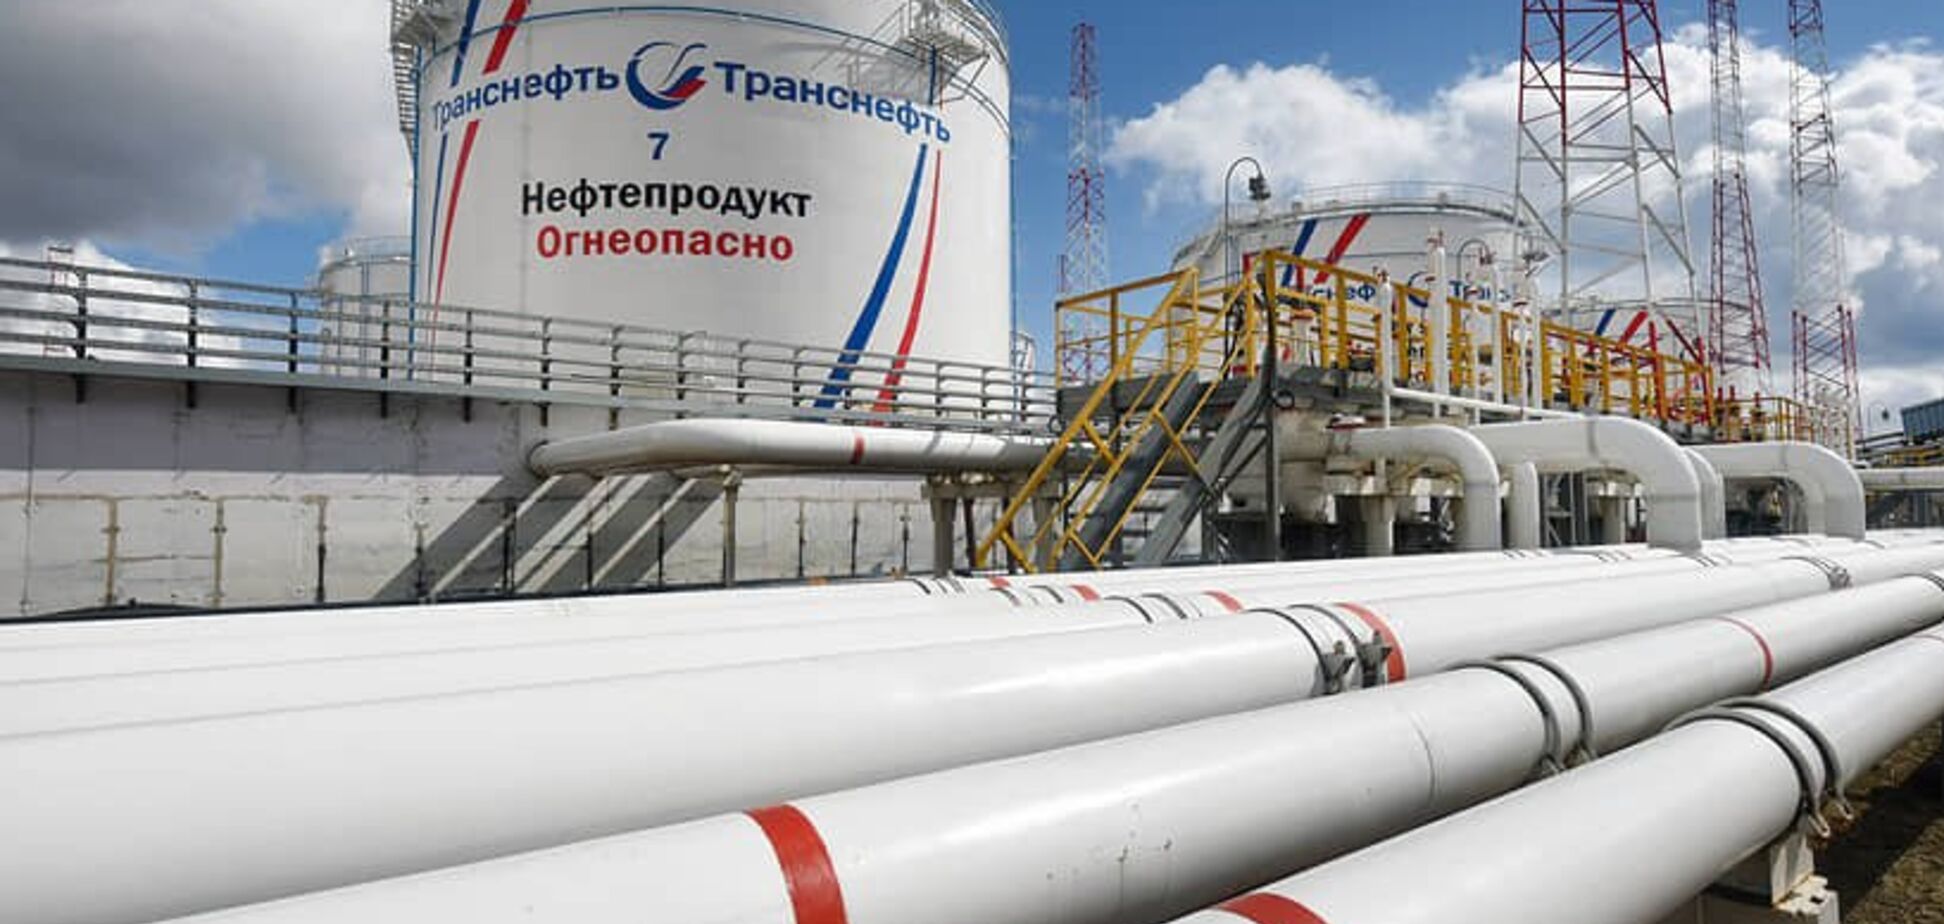 Брудна нафта Путіна: у Росії розкрили кричущий нюанс